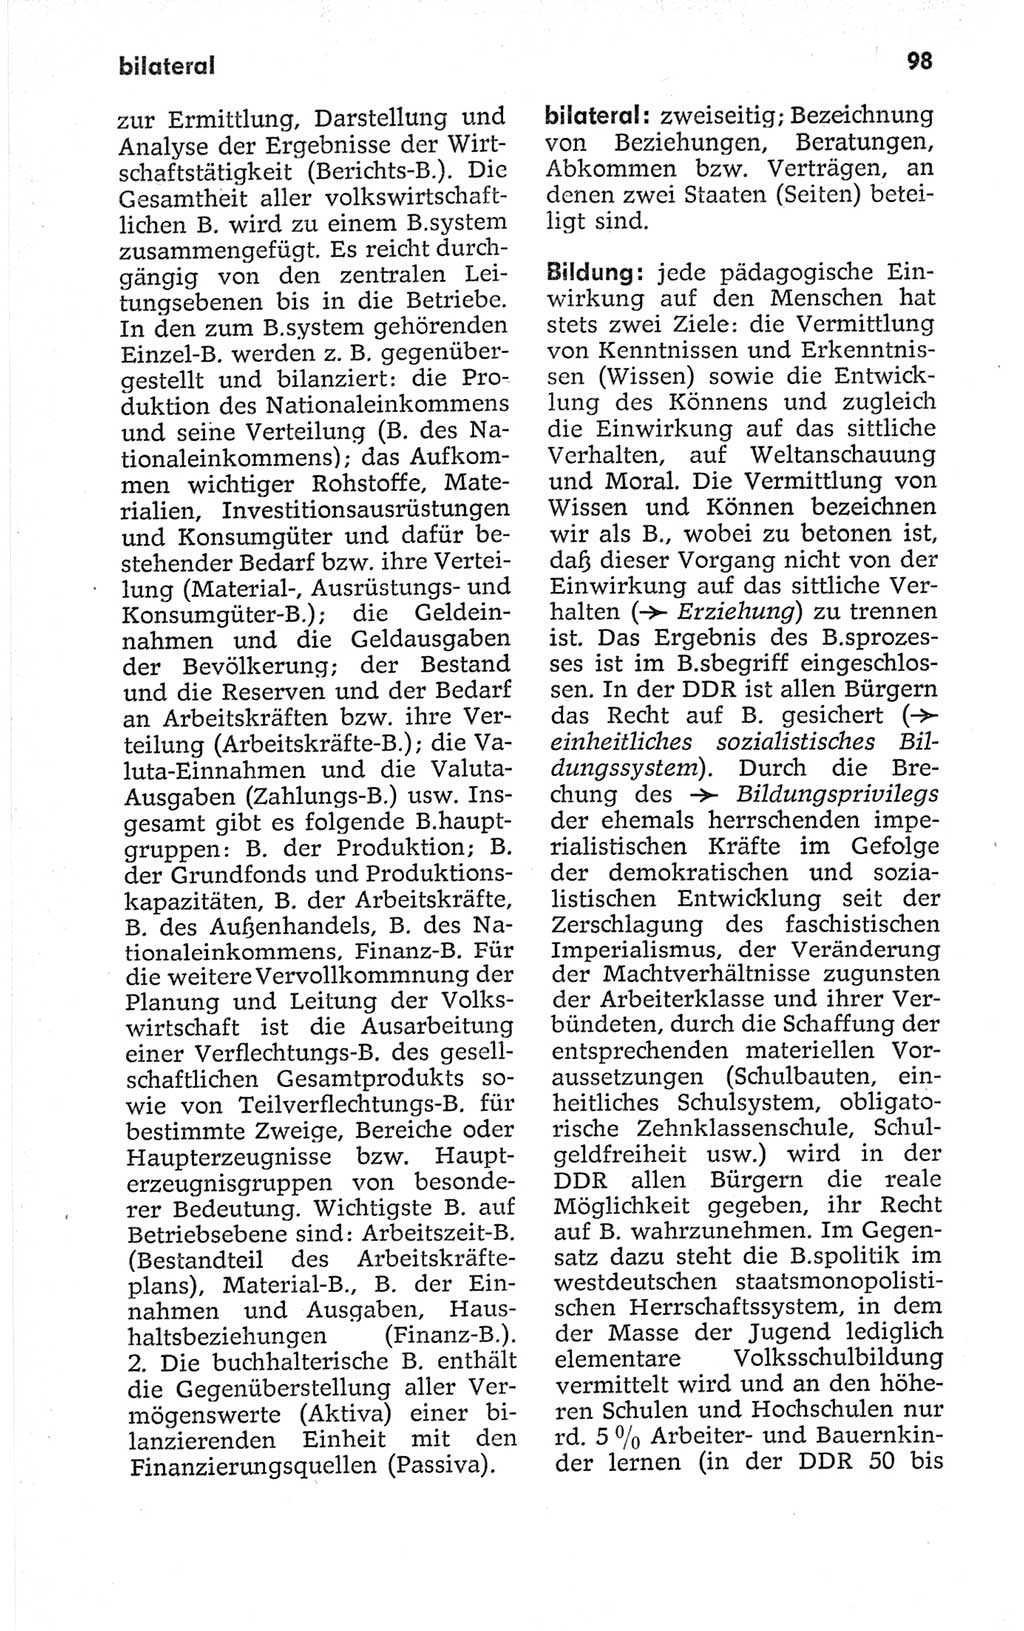 Kleines politisches Wörterbuch [Deutsche Demokratische Republik (DDR)] 1967, Seite 98 (Kl. pol. Wb. DDR 1967, S. 98)